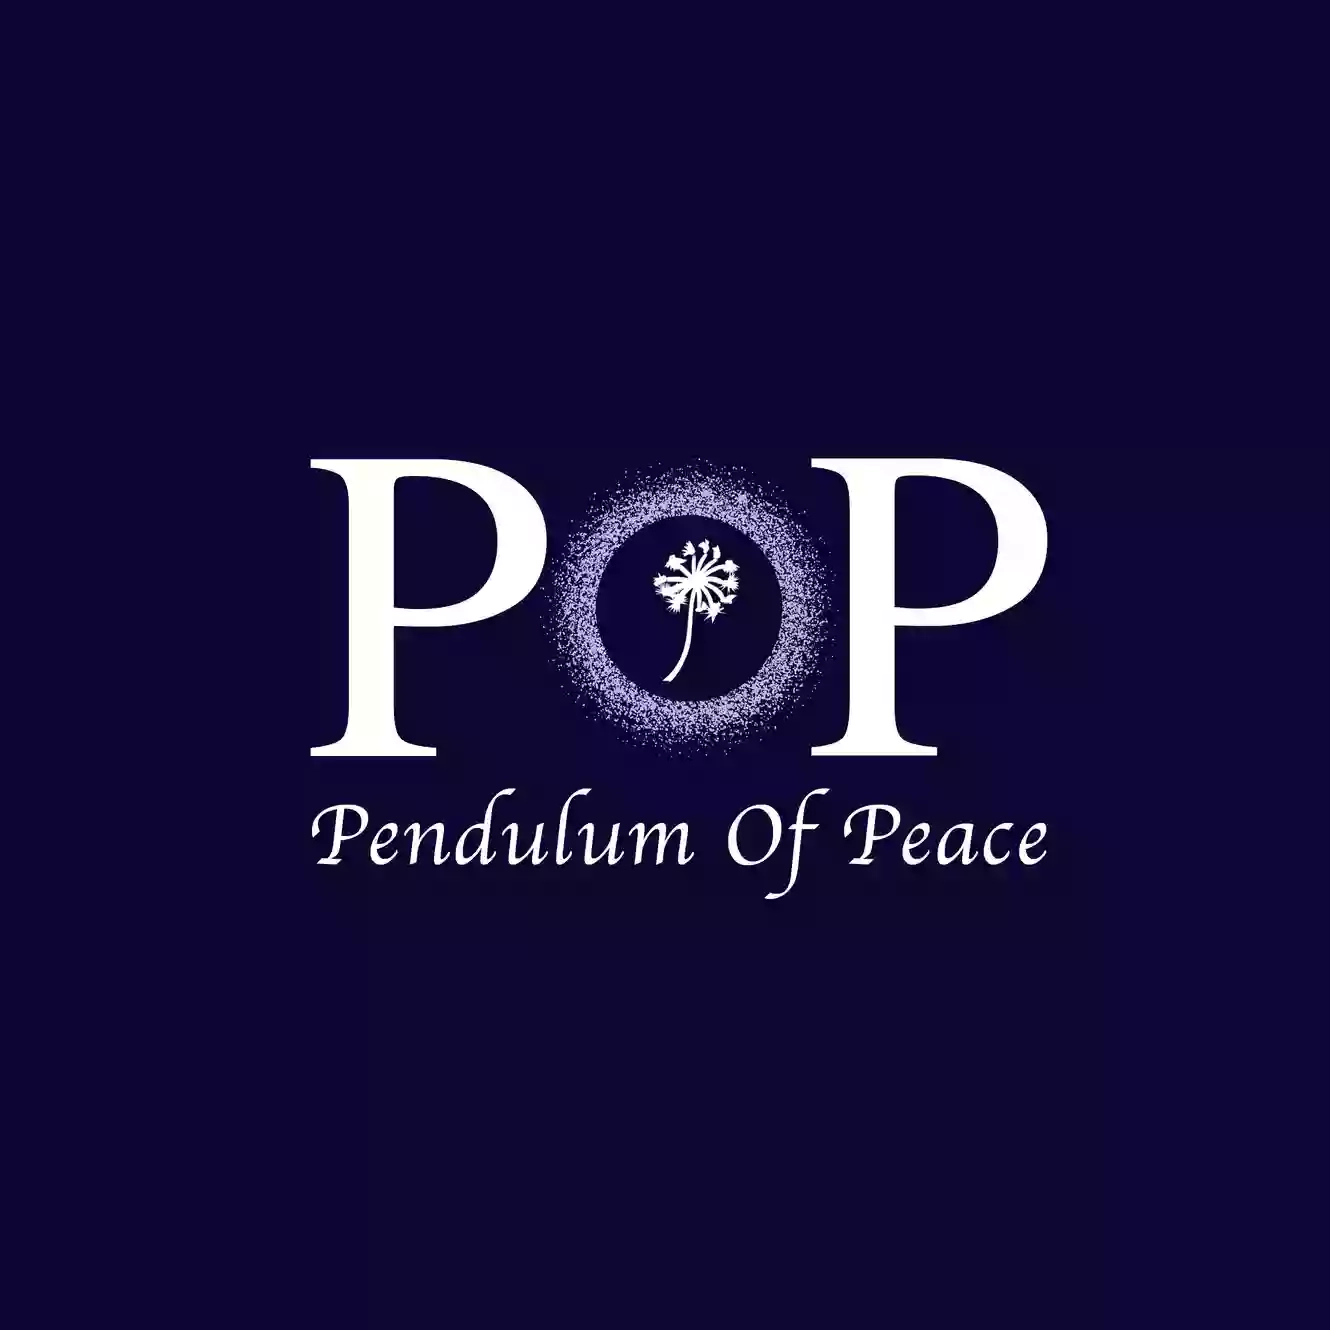 Pendulum of Peace